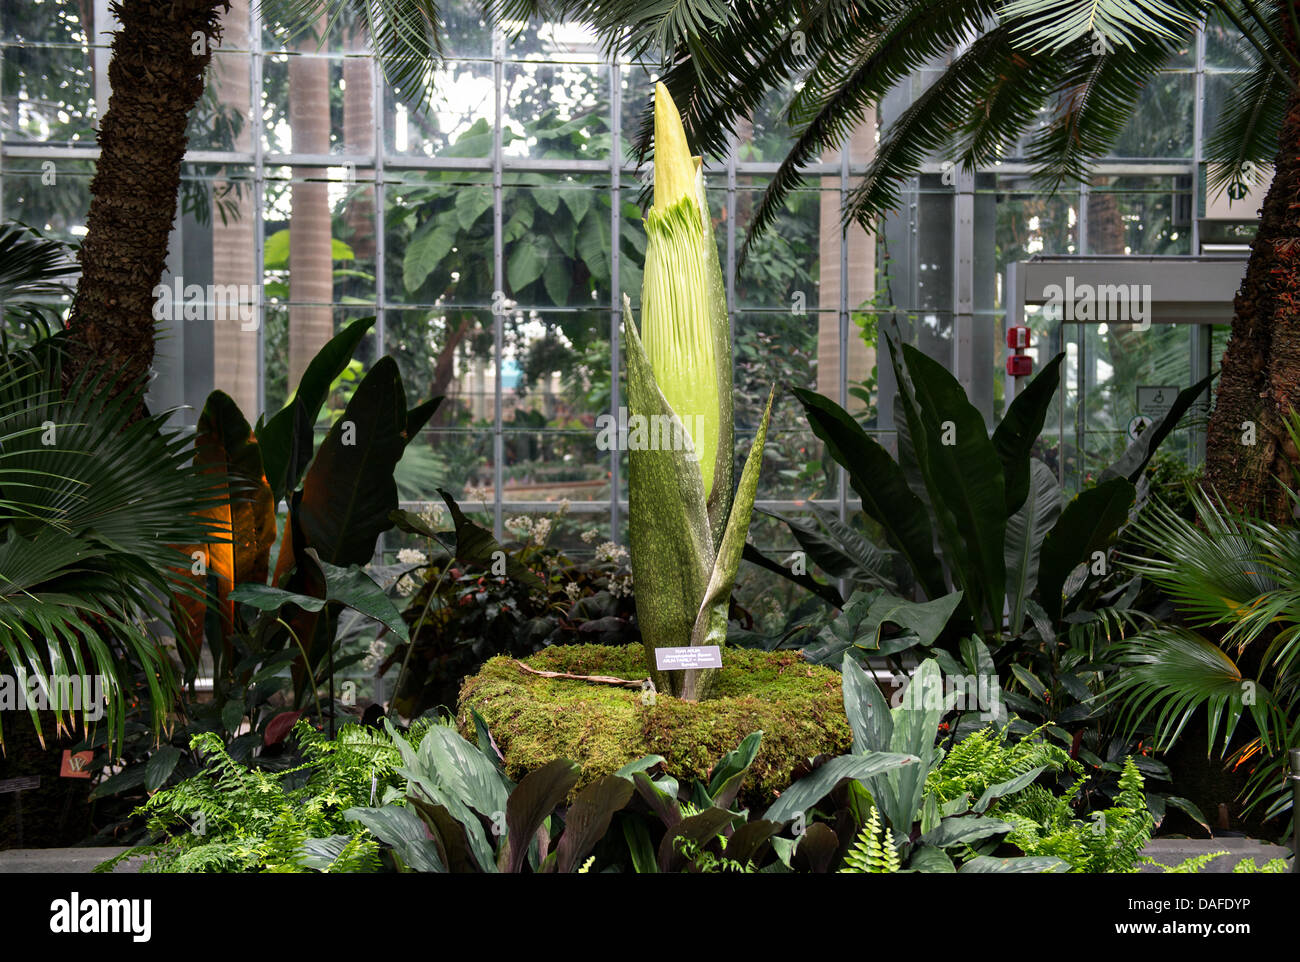 La Titan arum, noto anche come il cadavere fiore o stinky impianto, è in procinto di fiore a Stati Uniti Giardino Botanico Conservatorio Luglio 12, 2013 a Washington, DC. Il gigante fiore ha un odore che ricorda il profumo di una decomposizione di mammifero. Foto Stock